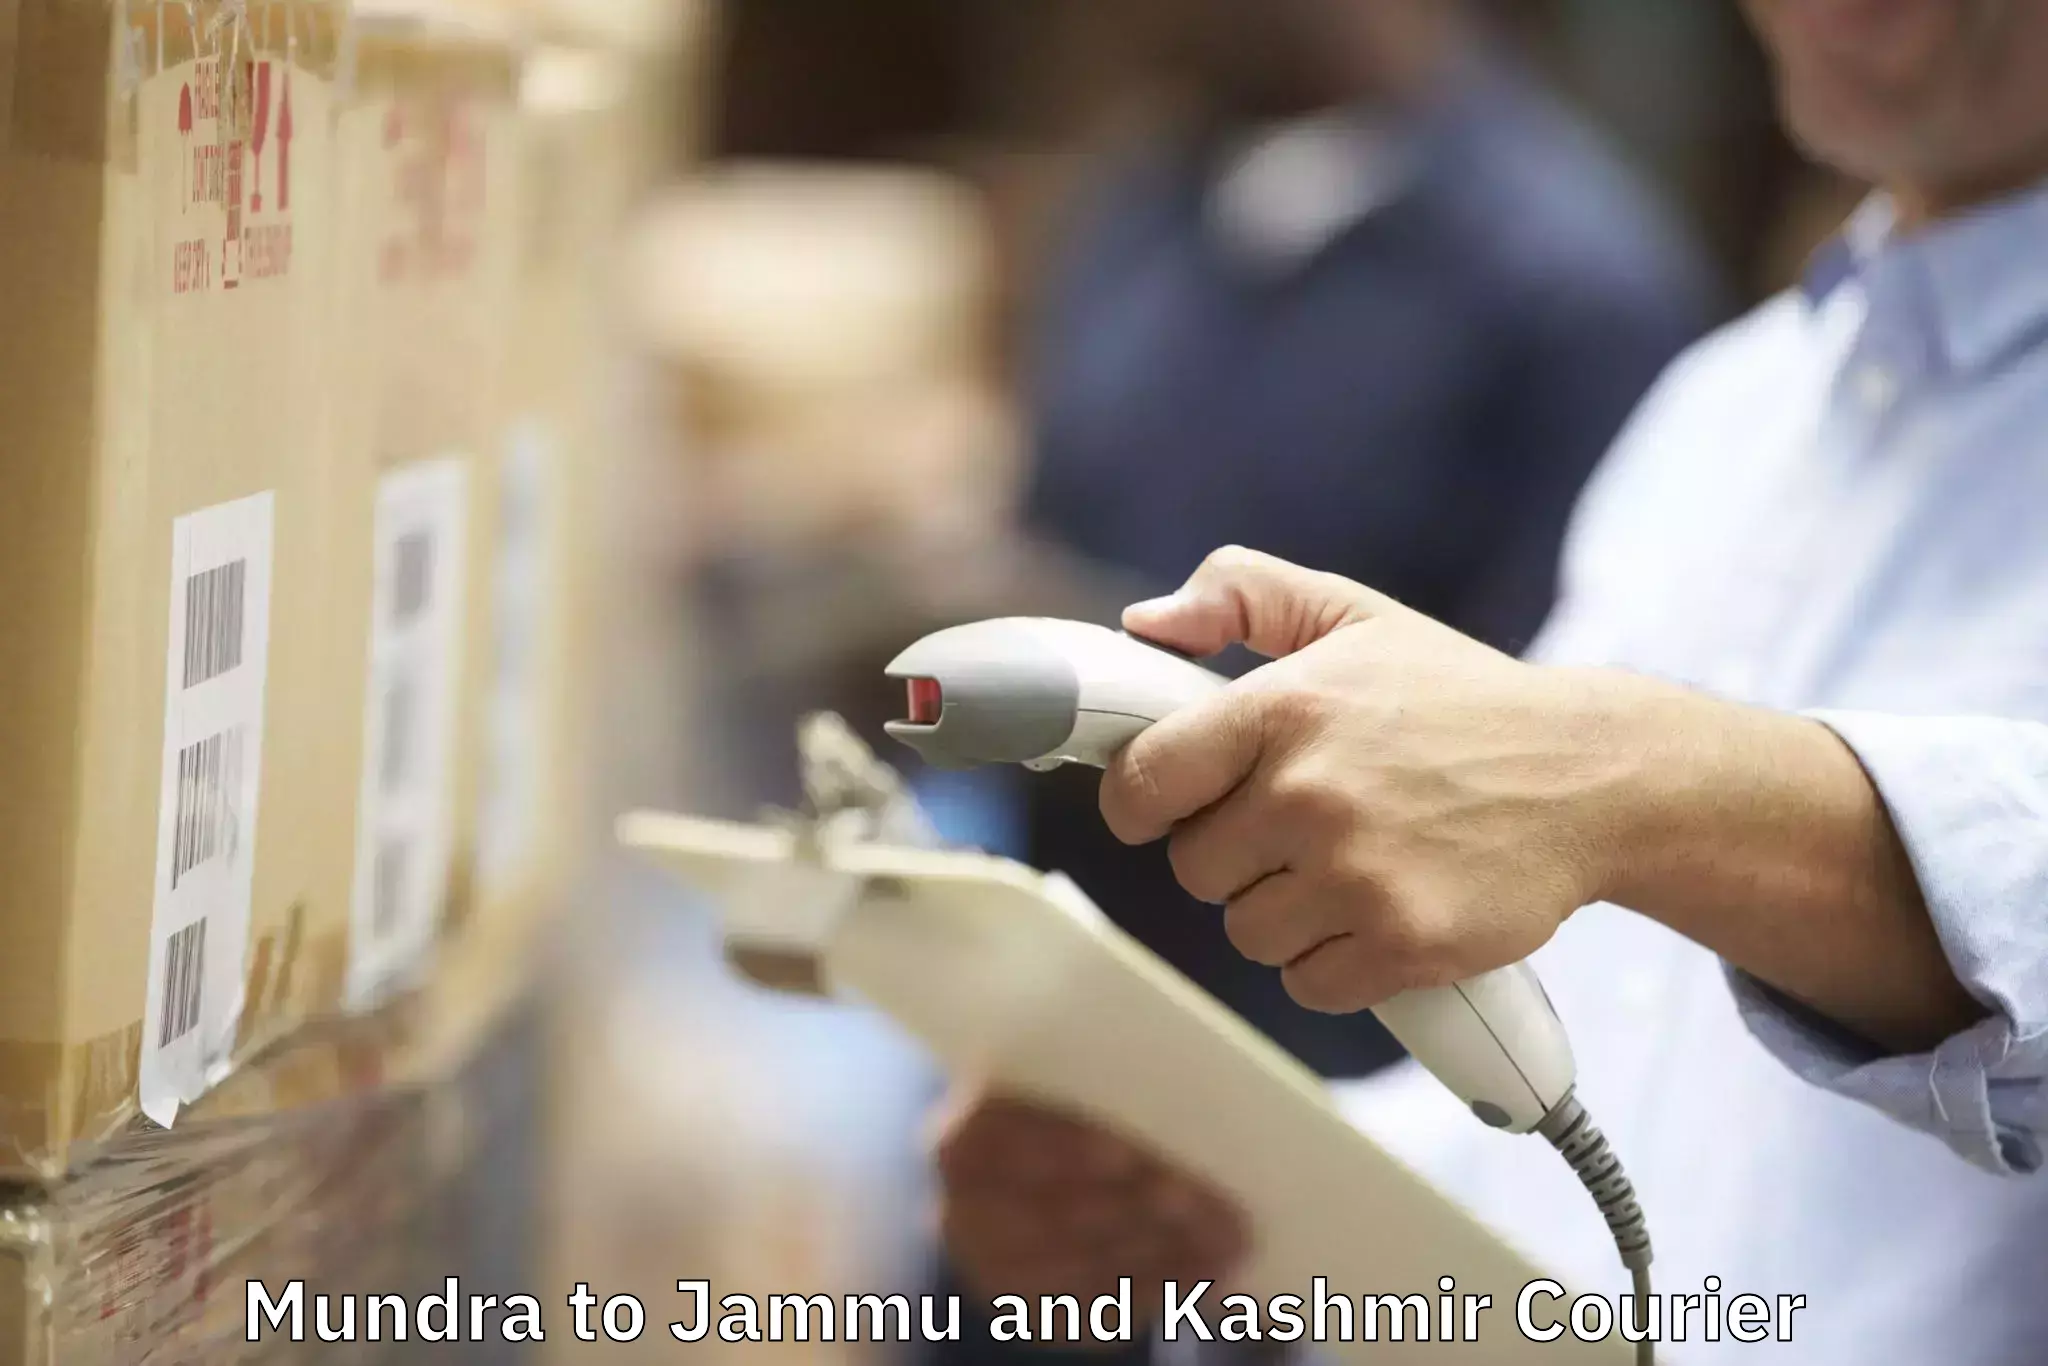 Furniture transport experts Mundra to Jammu and Kashmir